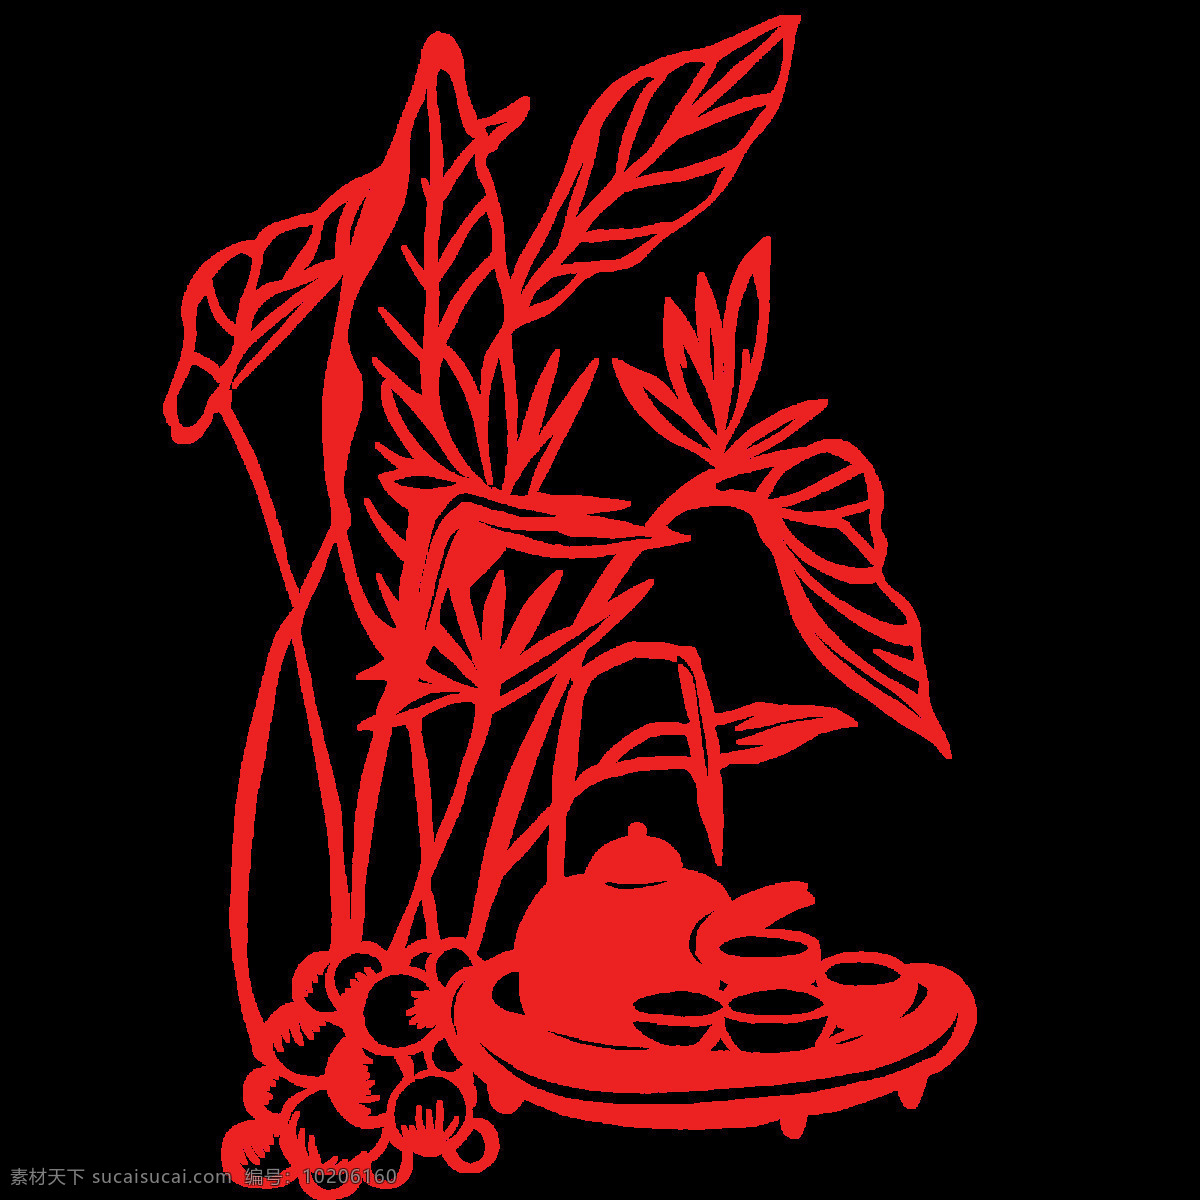 剪花 立体 中国风 3d 微立体 花卉 花朵 花草 城市 建筑 剪影 促销 装饰 免费模版 平面模版 免费素材 植物 红色 剪纸 元素 红色中国风 植物元素 红色元素 文化艺术 传统文化